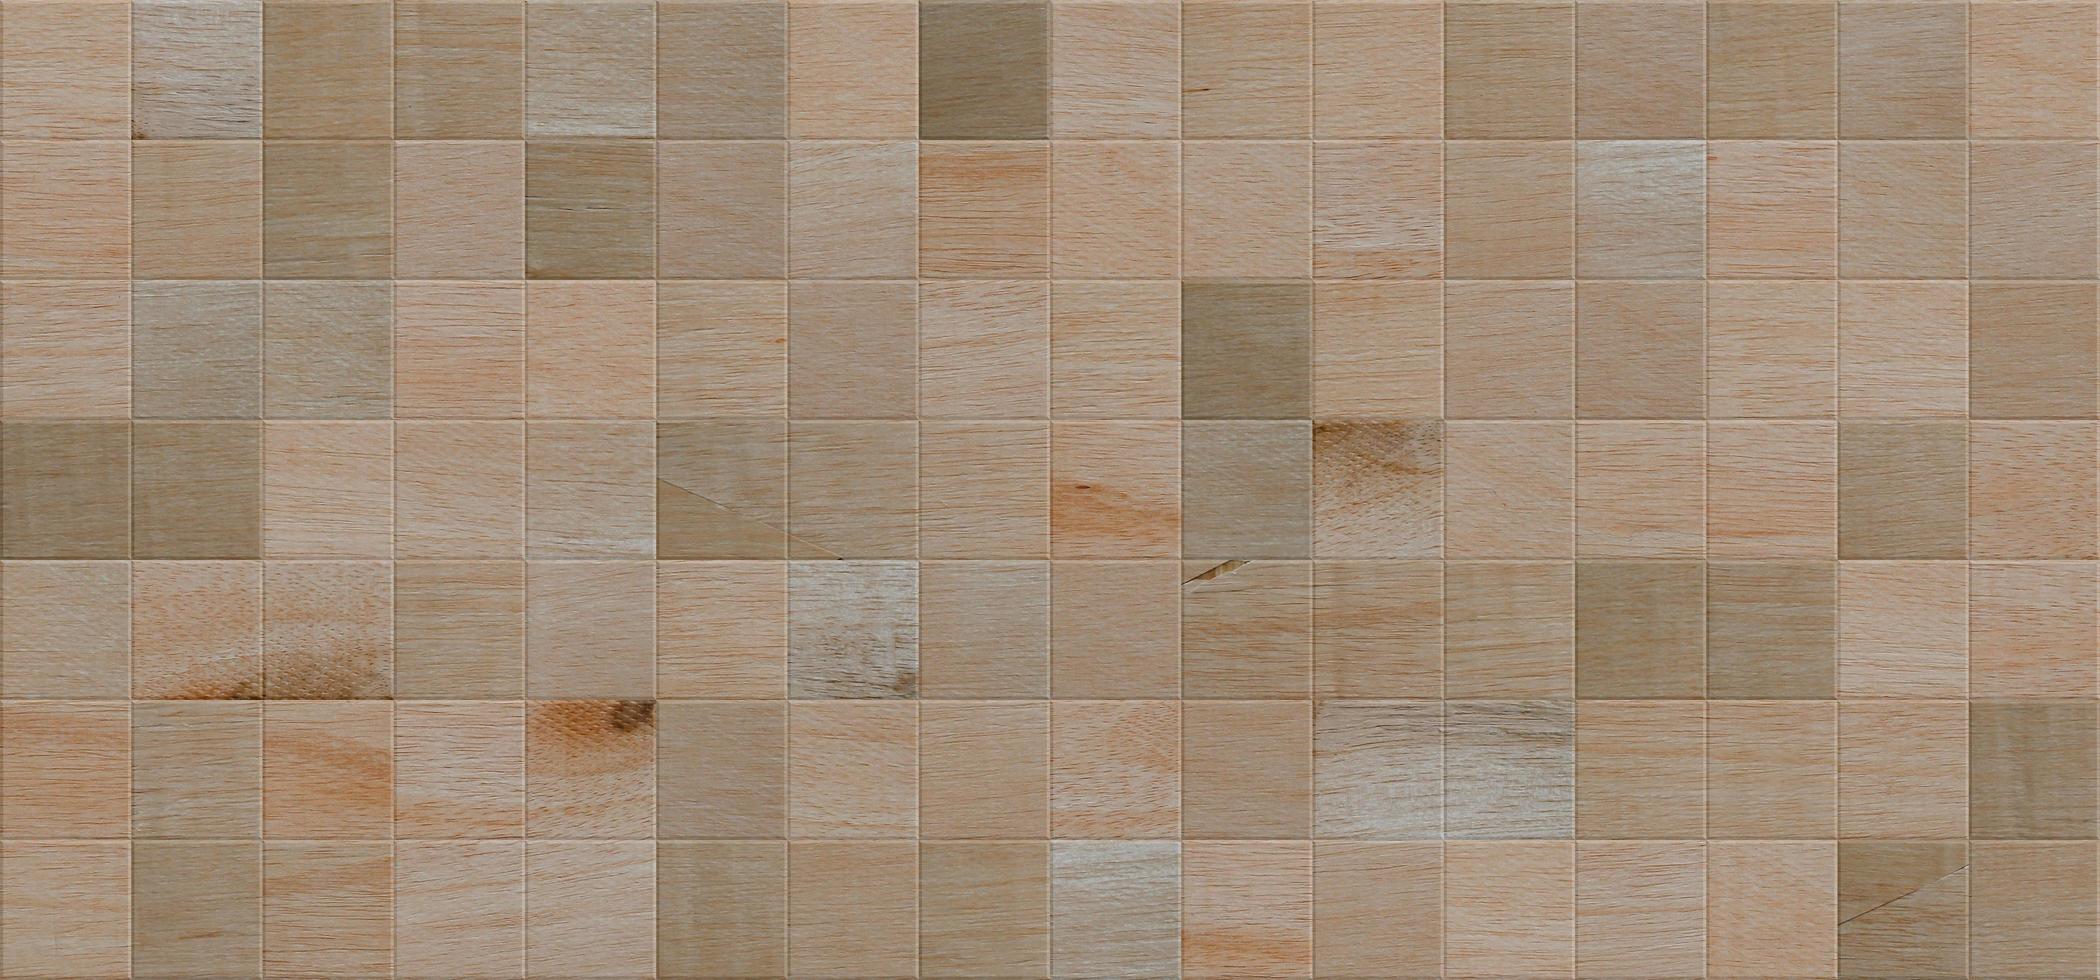 mosaik träplankor för sömlös bakgrund, vägg olika träslag. träpaneler. bakgrund för design och presentationer. foto